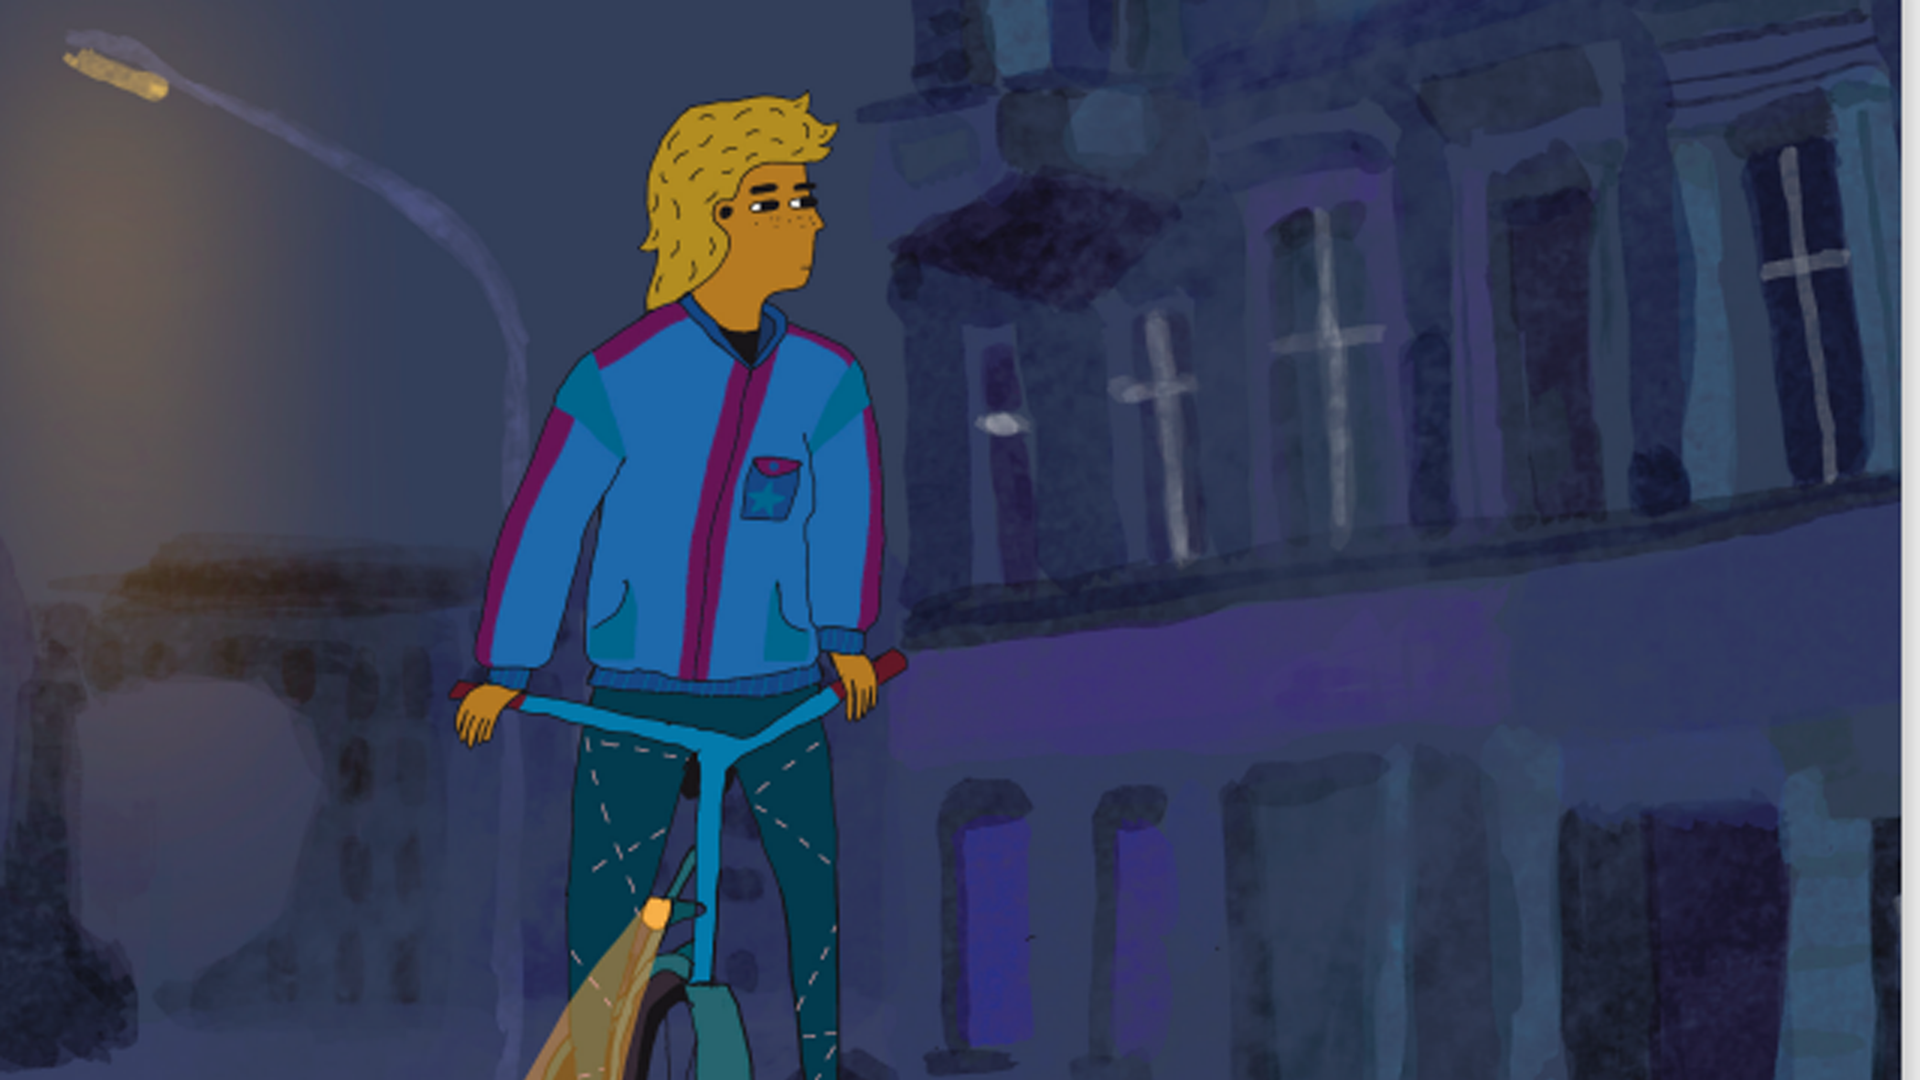 In der Zeichnung ist ein Mädchen mit blonden Haaren in der Nacht zu sehen. Sie sitzt auf einem Fahrrad, fährt aber nicht. Die Vorderlampe wirft einen Lichtkegel. Im Hintergrund sind Häuserfassaden zu sehen.